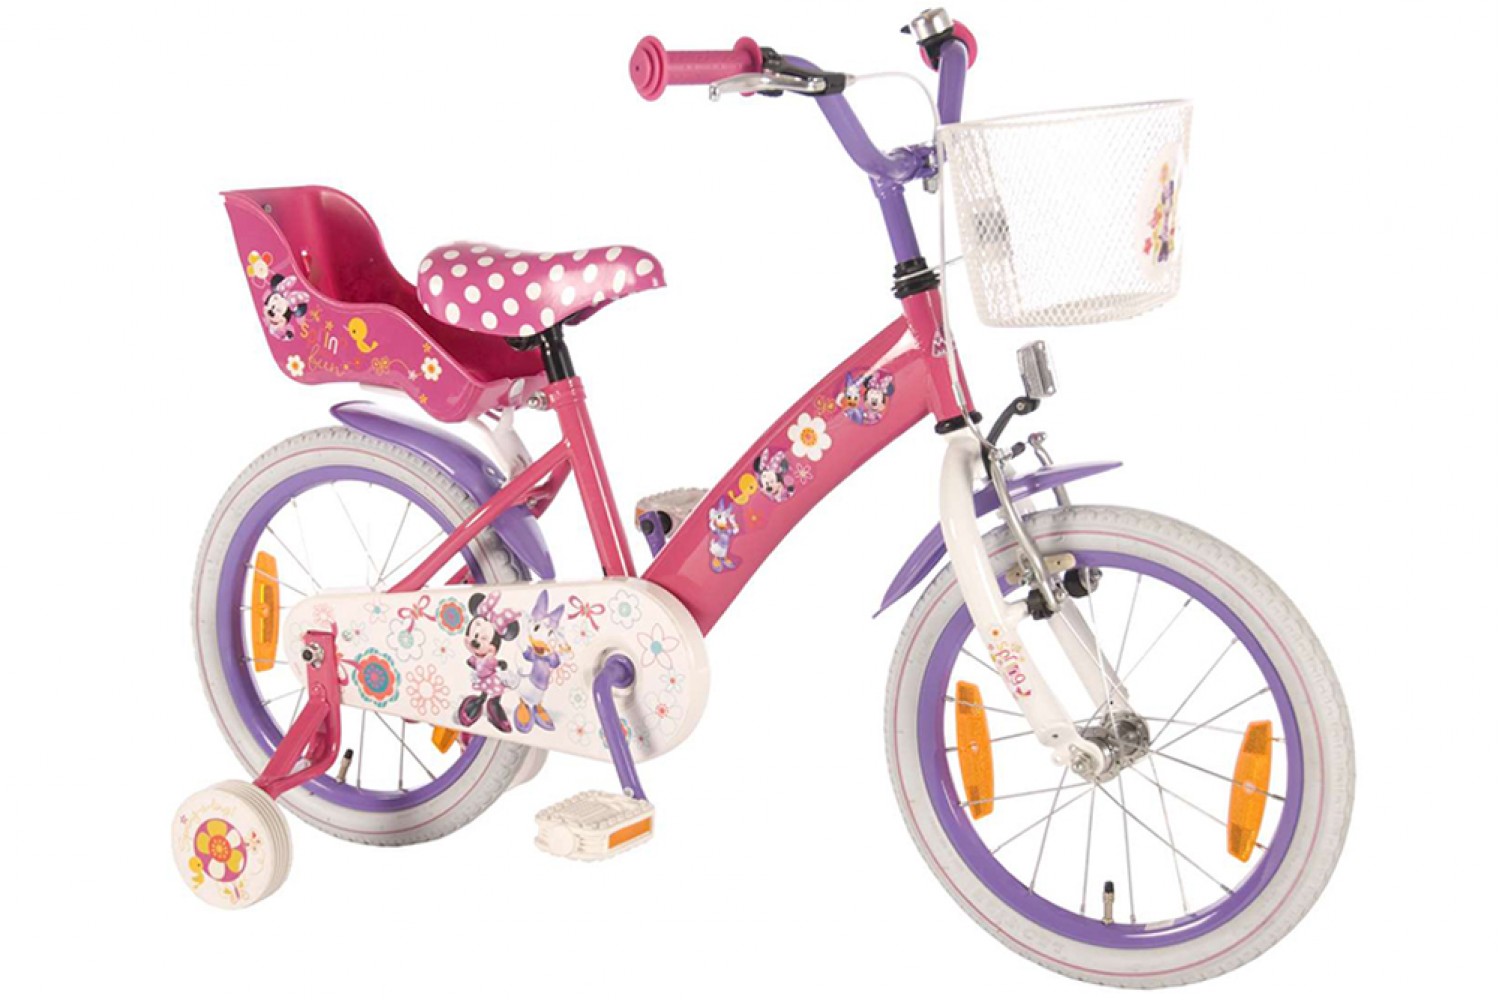 Overweldigen Isoleren Proberen Disney Minnie Bow-Tique Roze-Paars 16 inch - Meisjesfiets | City-Bikes.nl